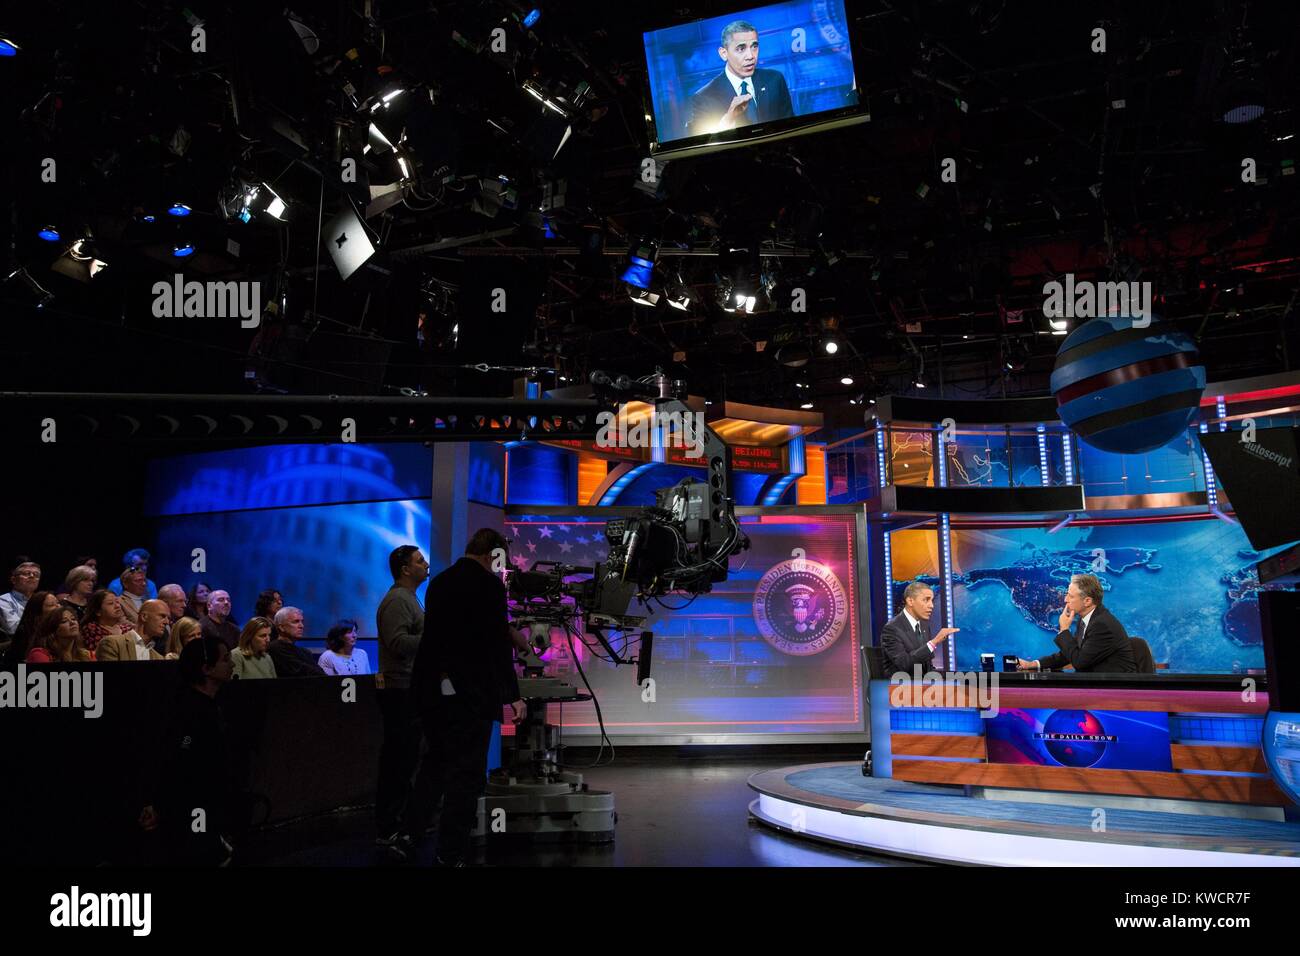 Präsident Barack Obama interviewt während einem Aufnehmen der "Daily Show mit Jon Stewart'. Comedy Central Studios in New York, Okt. 18, 2012. (BSLOC 2015 3 112) Stockfoto